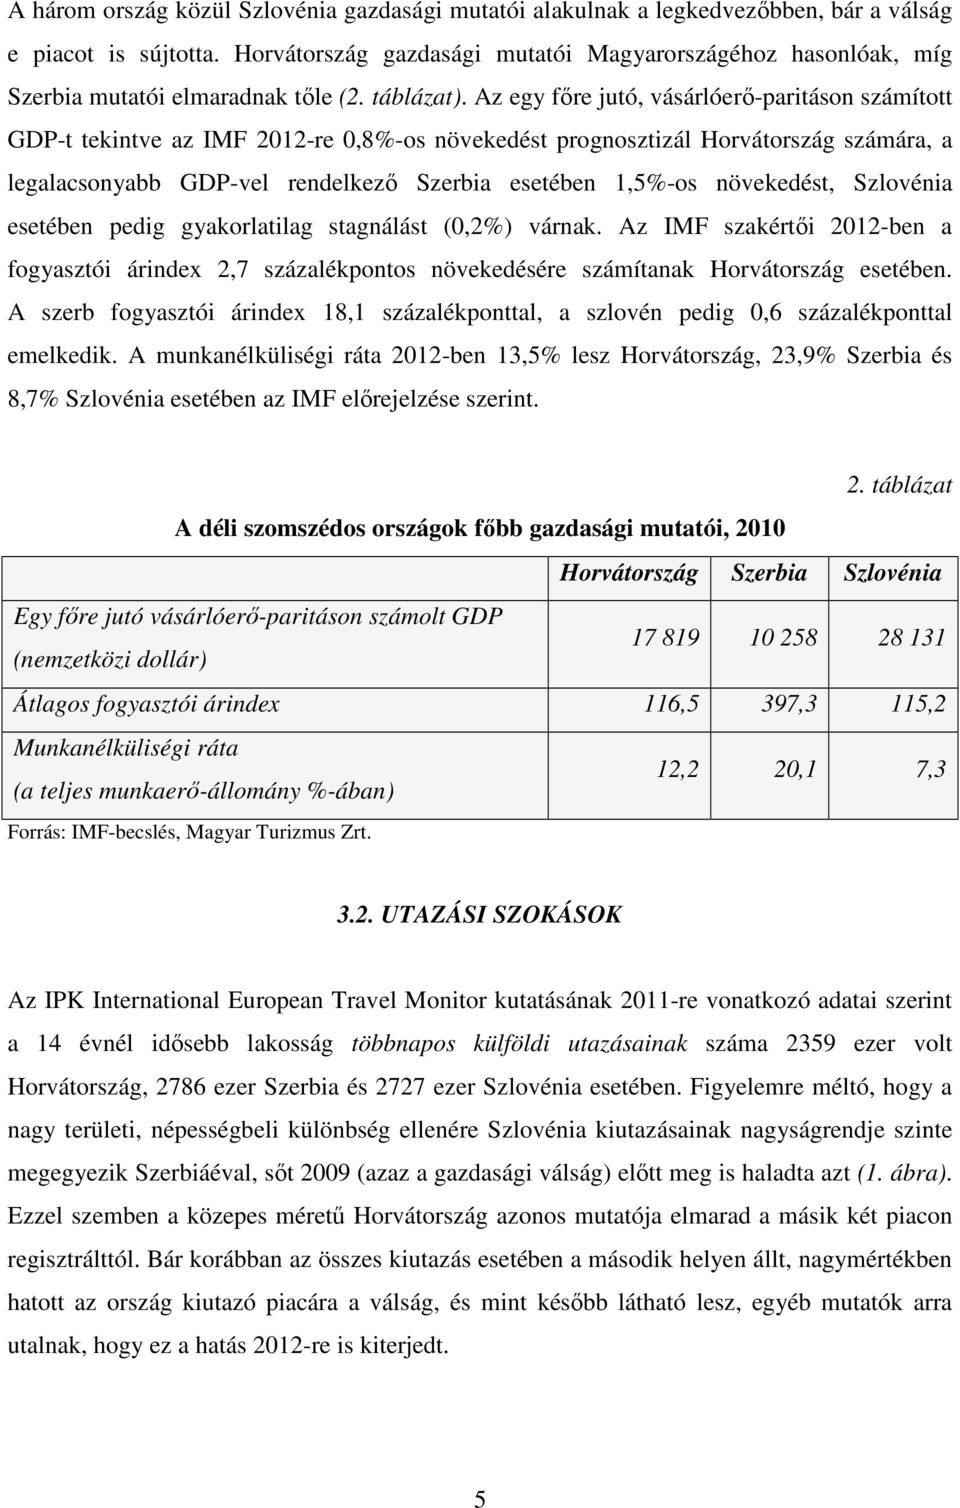 Az egy fıre jutó, vásárlóerı-paritáson számított GDP-t tekintve az IMF 2012-re 0,8%-os növekedést prognosztizál Horvátország számára, a legalacsonyabb GDP-vel rendelkezı Szerbia esetében 1,5%-os